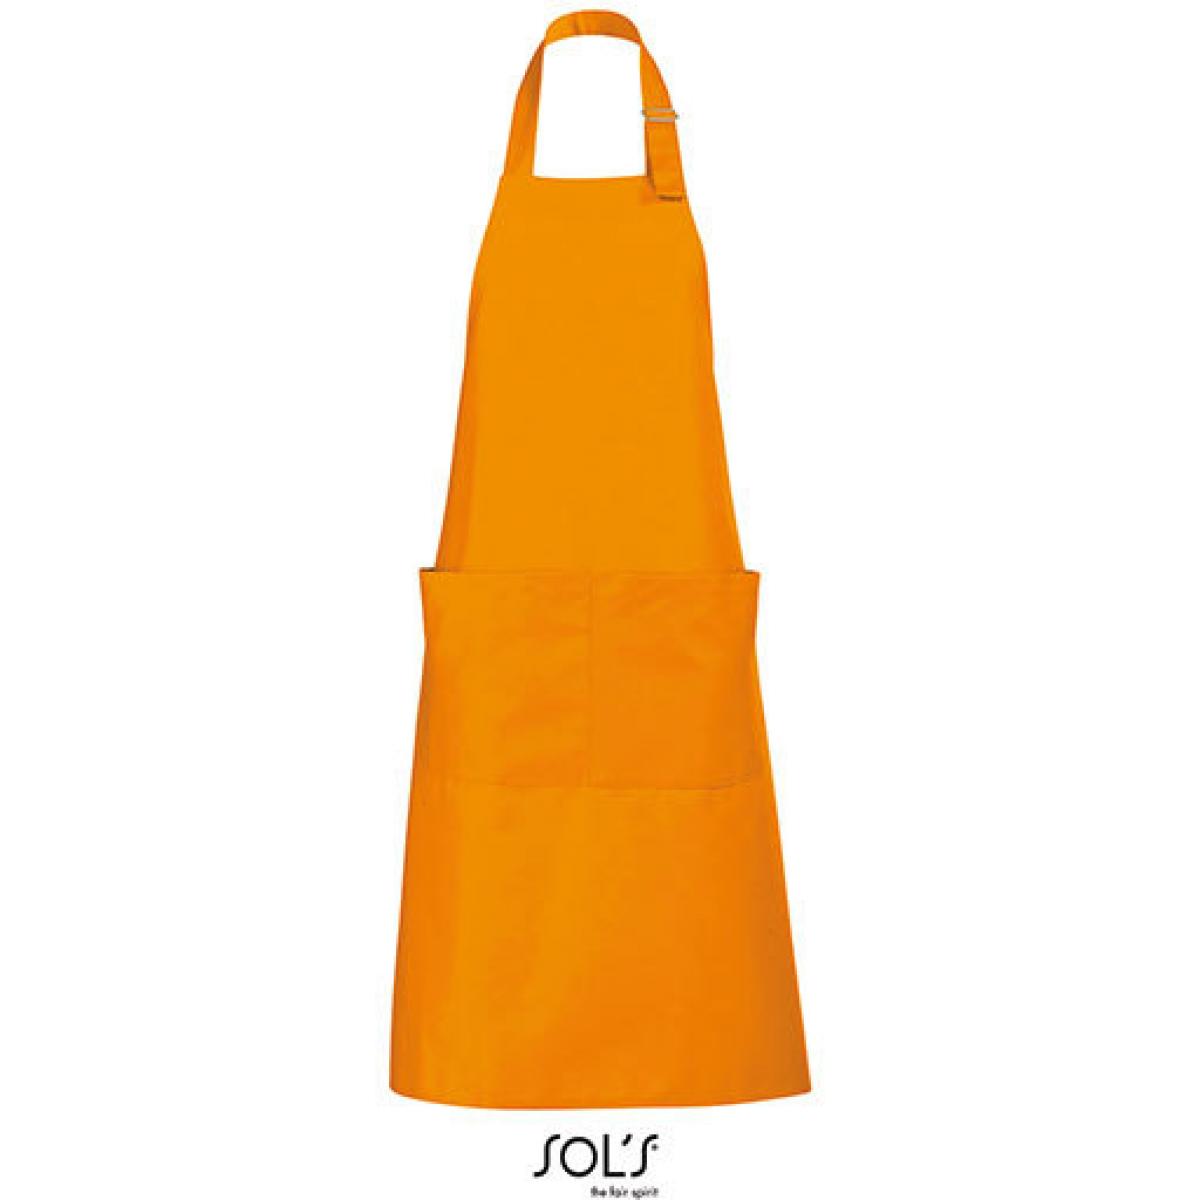 Hersteller: SOLs Herstellernummer: 88010 Artikelbezeichnung: Long Apron Gala - 75 x 90 cm Farbe: Orange